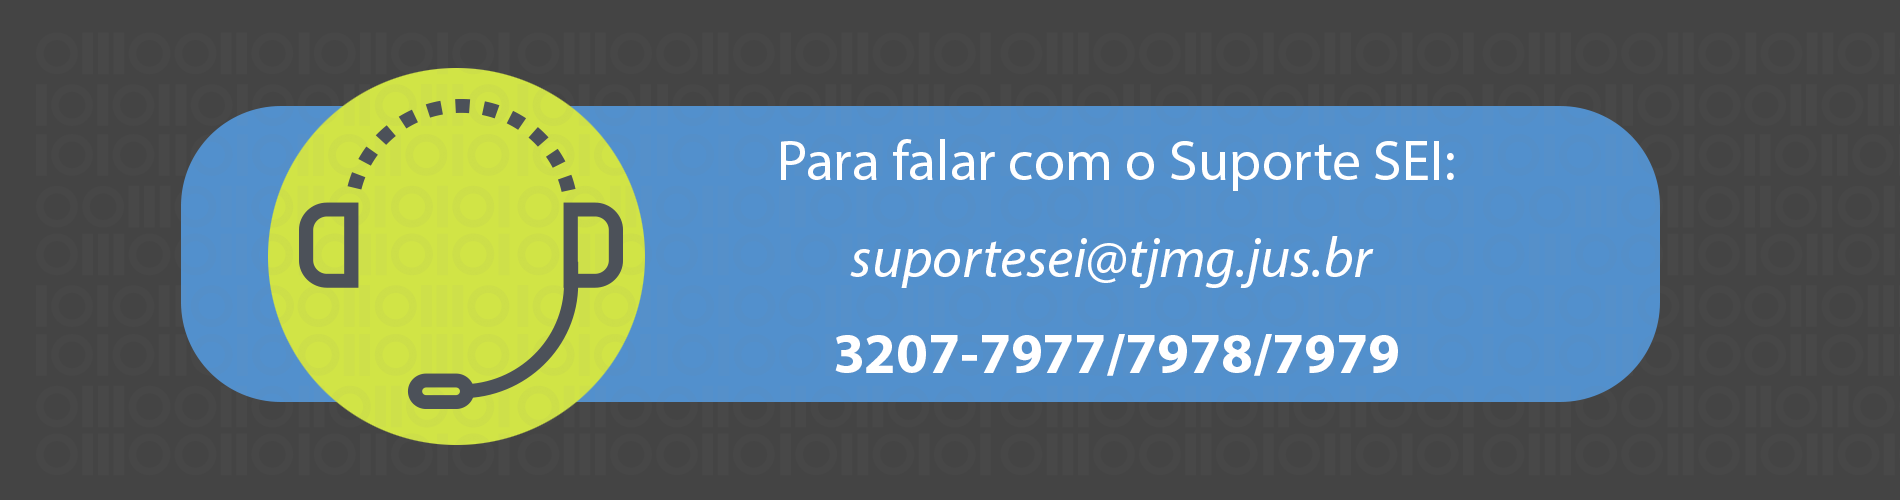 Para falar com o Suporte SEI: suportesei@tjmg.jus.br, 3207-7977, 3207-7978, 3207-7979.